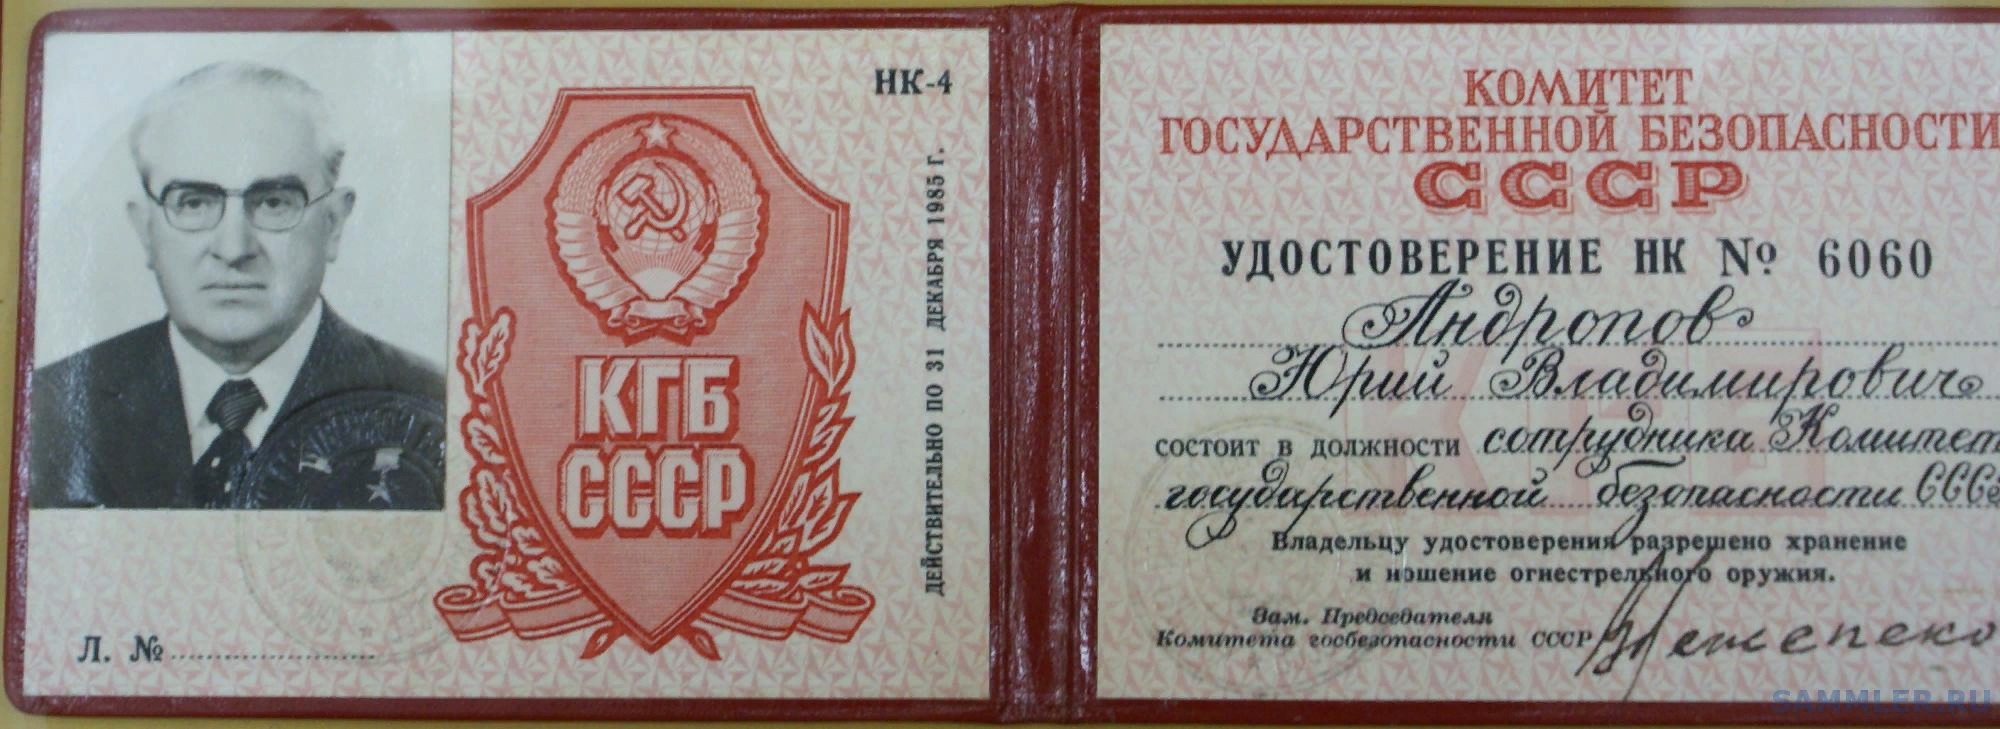 Комитет государственной безопасности СССР сотрудники КГБ СССР. Ксива КГБ СССР.